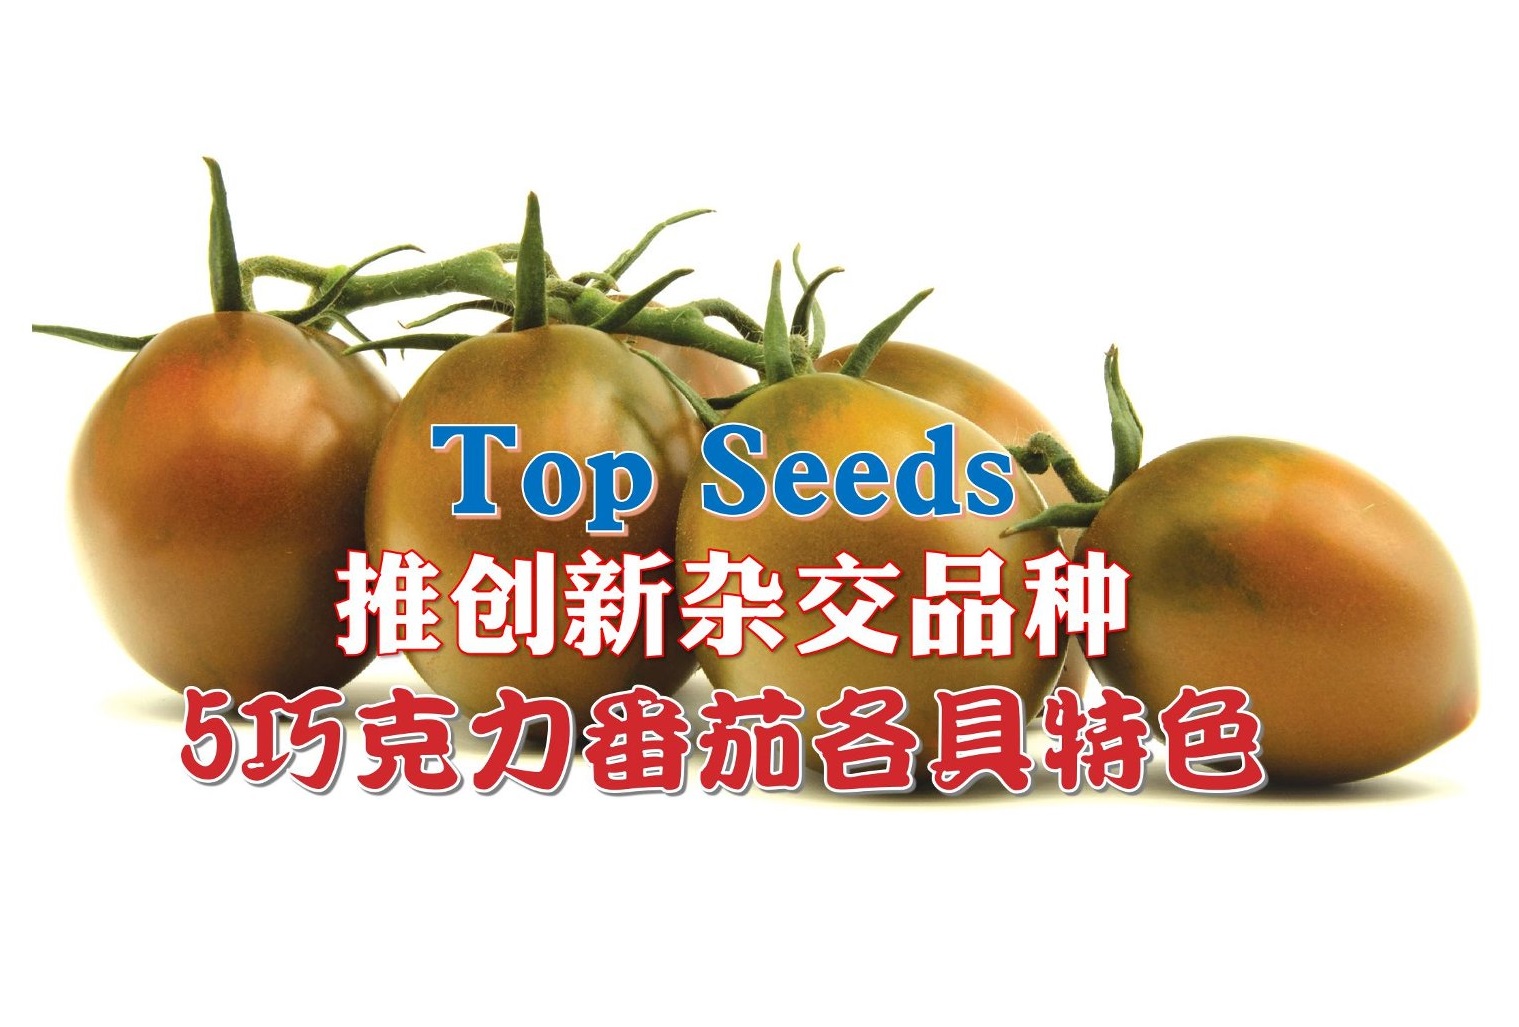 Top Seeds推创新杂交品种 5巧克力番茄各具特色 - 农牧世界